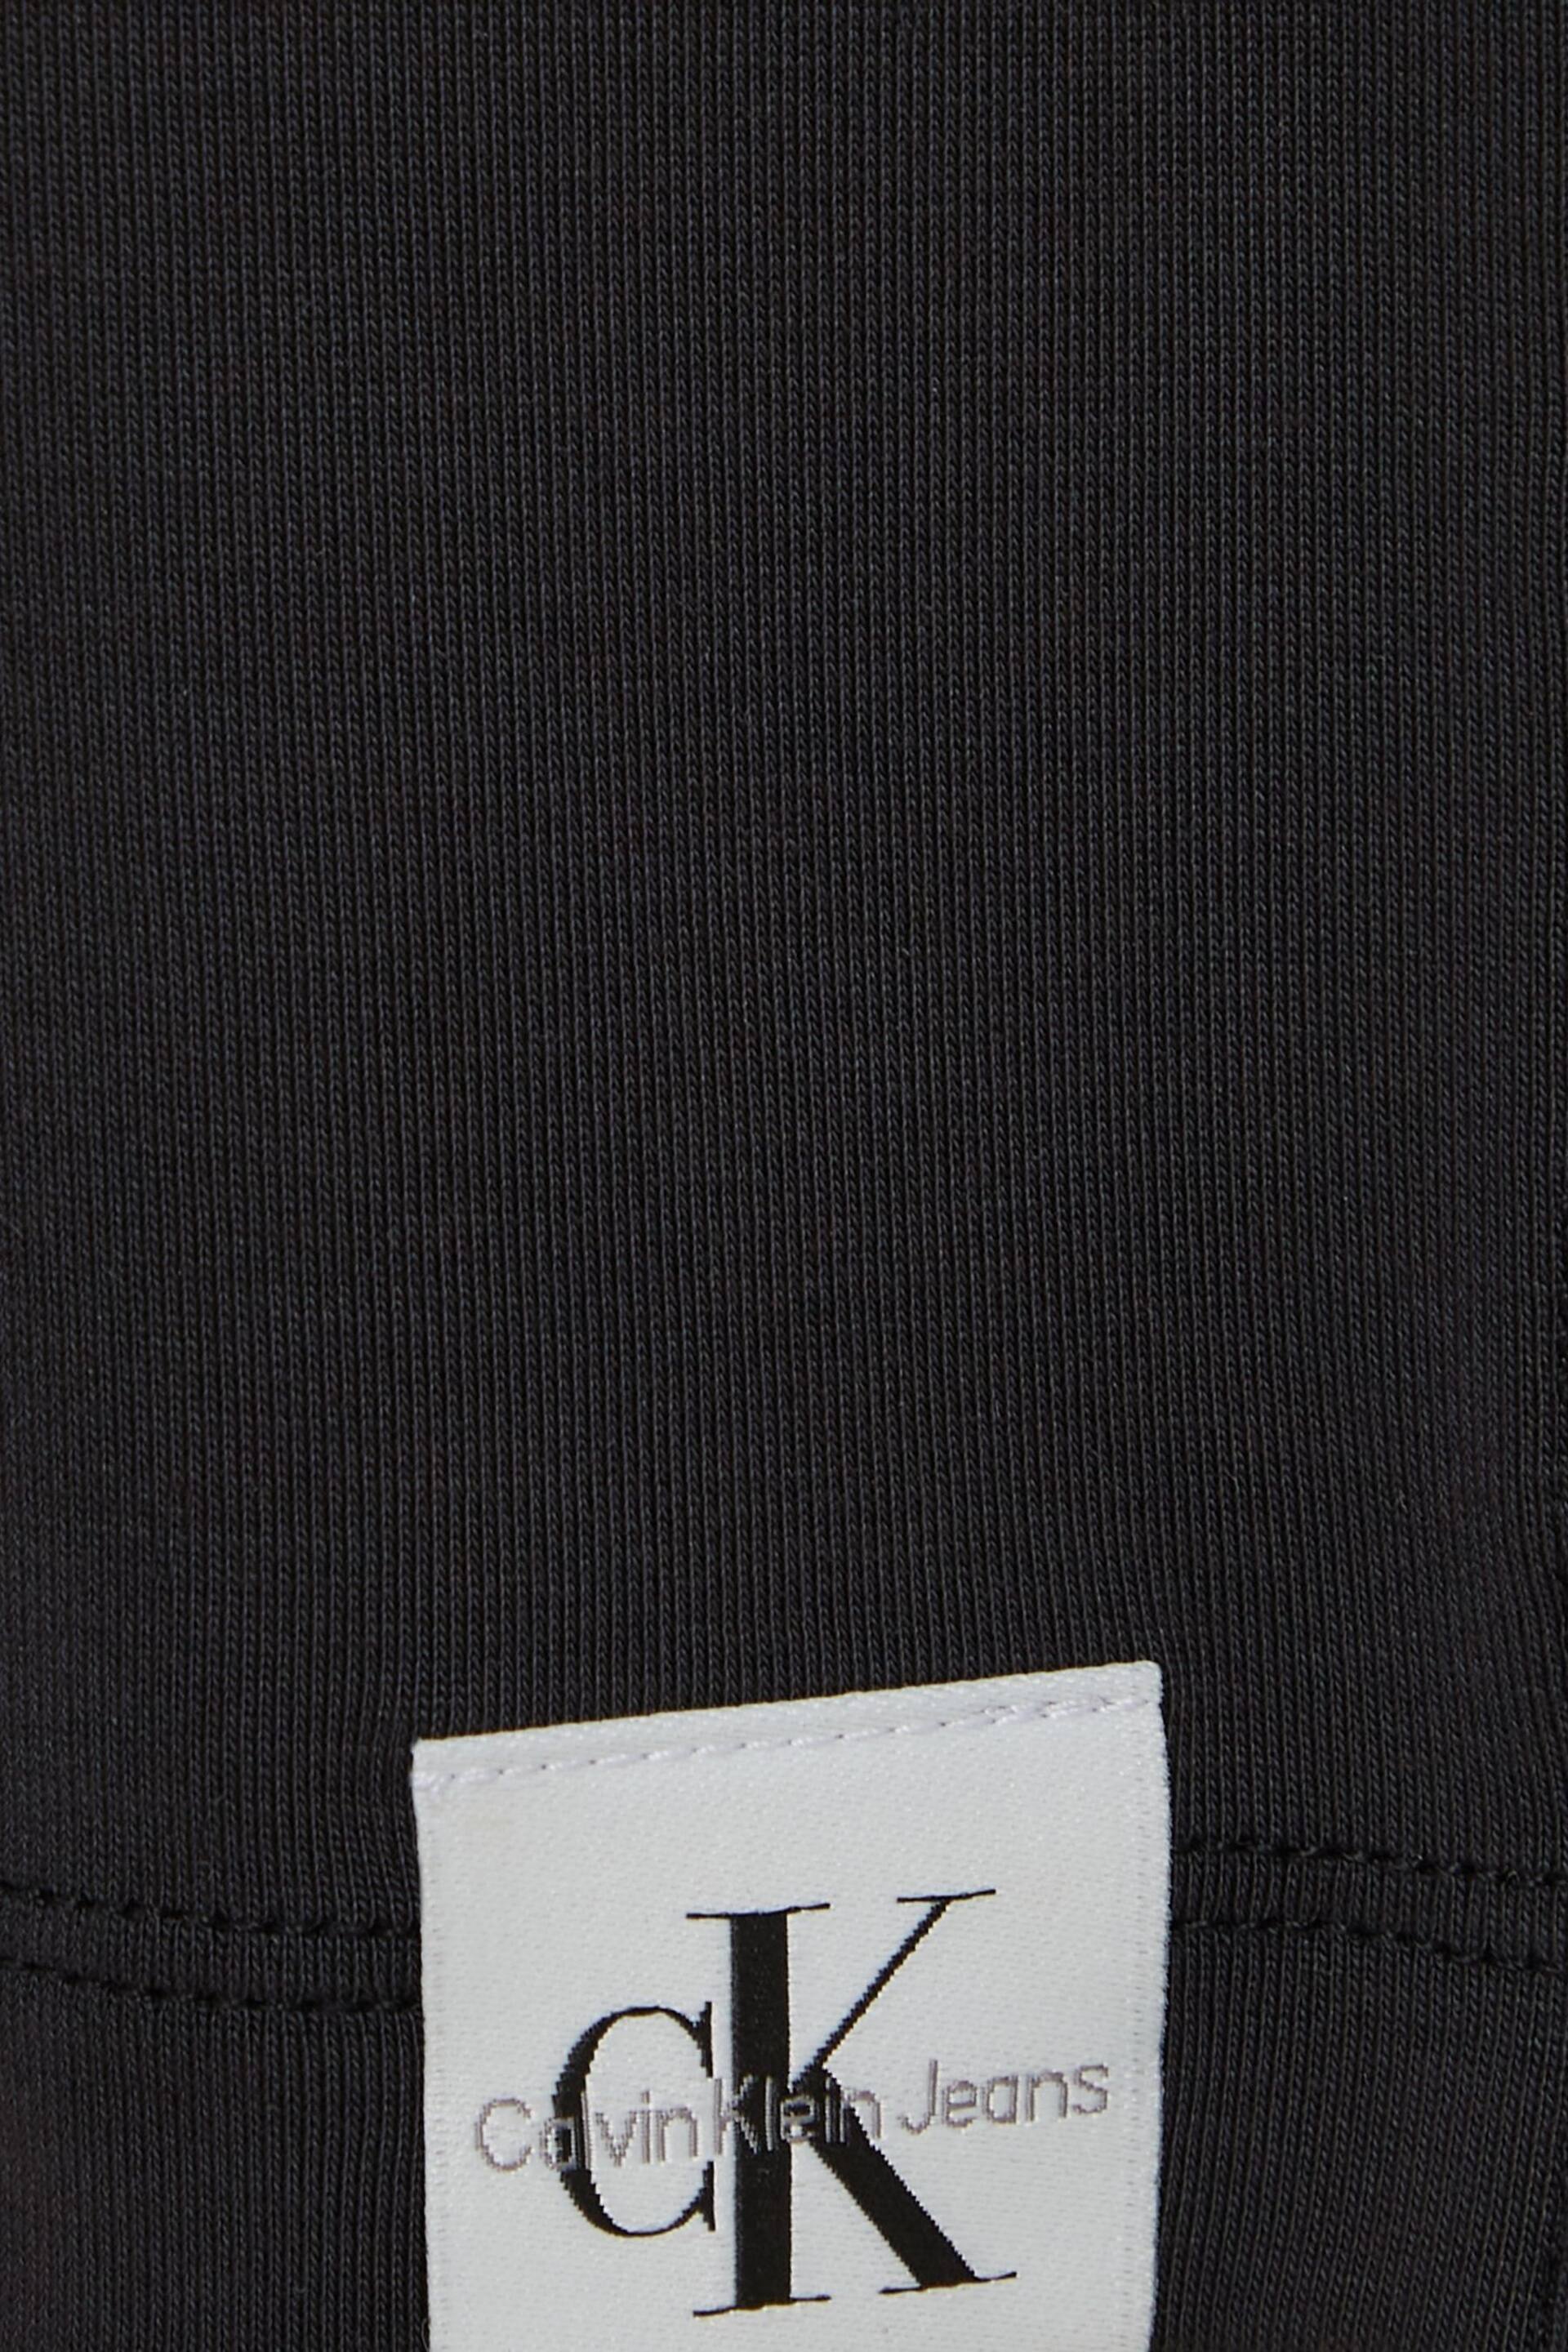 Calvin Klein Black T-Shirt Dress - Image 6 of 6